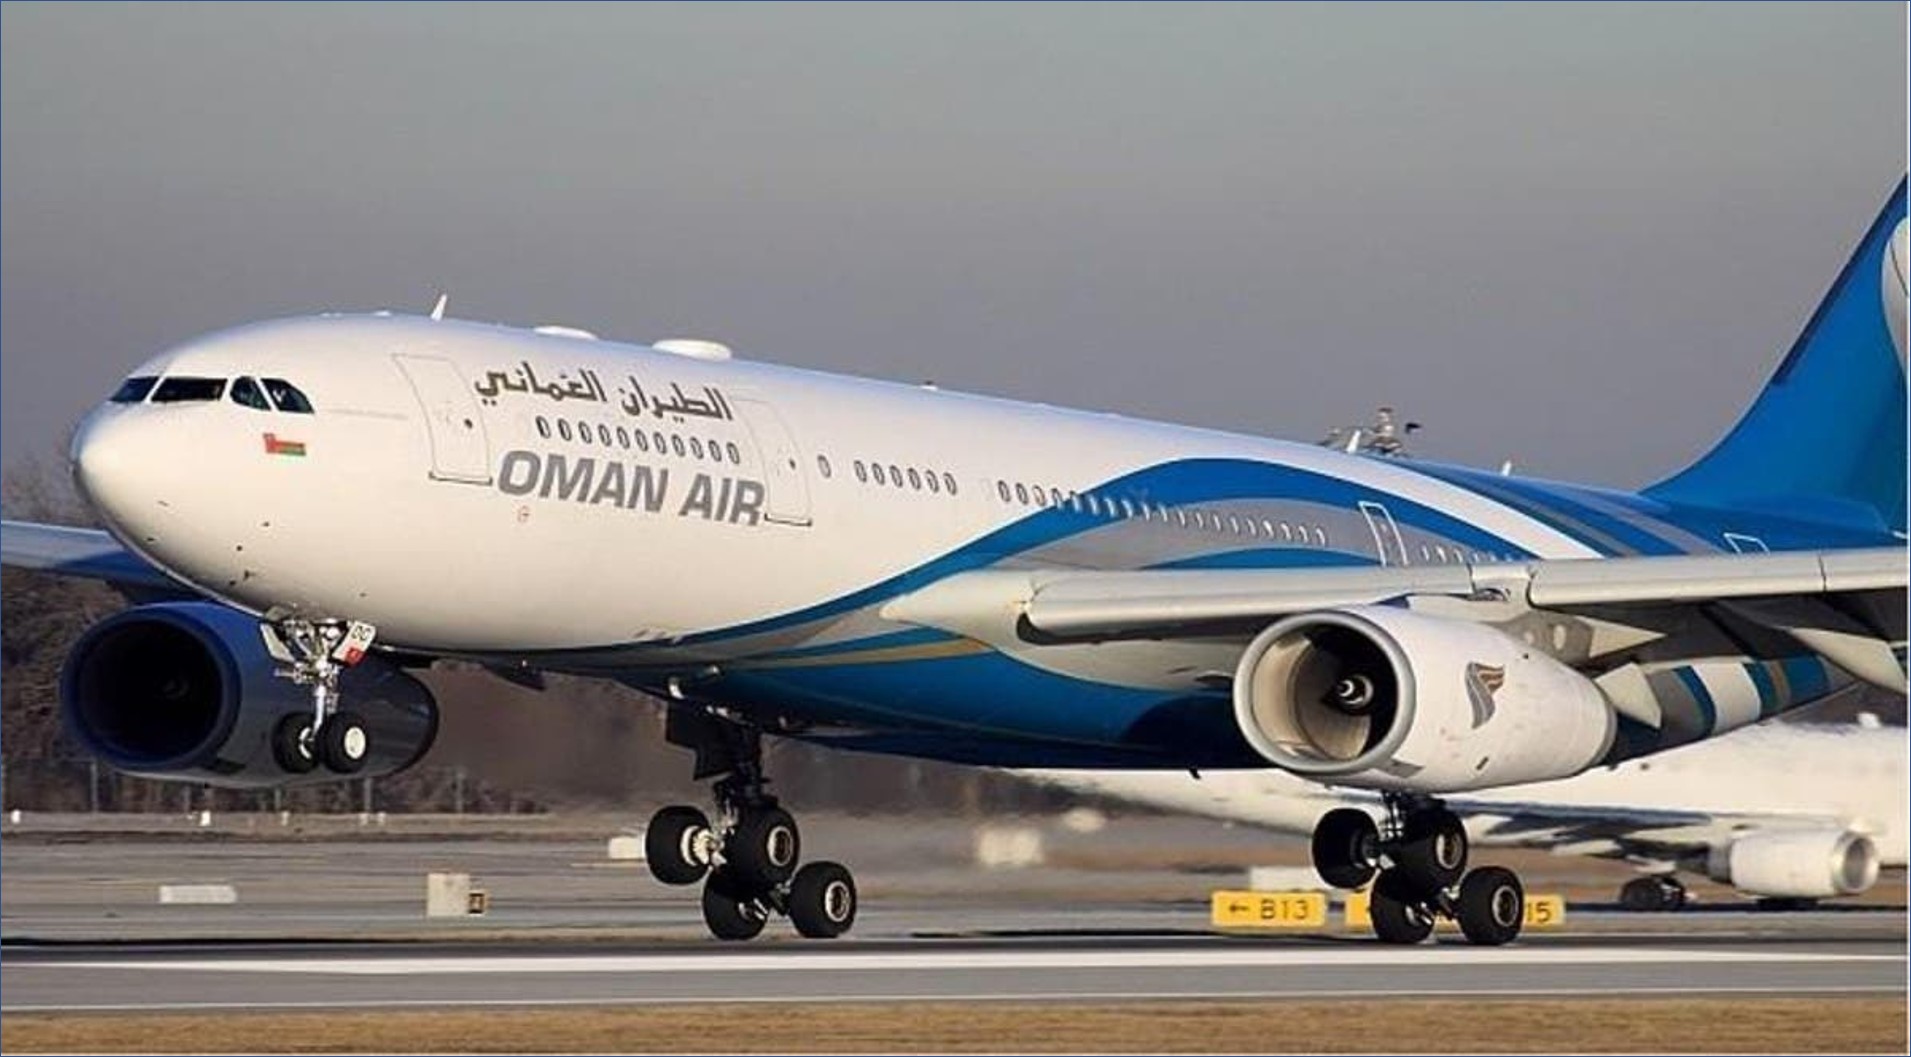 الطيران العماني بالسعودية يعلن عن وظائف إدارية للرجال والنساء